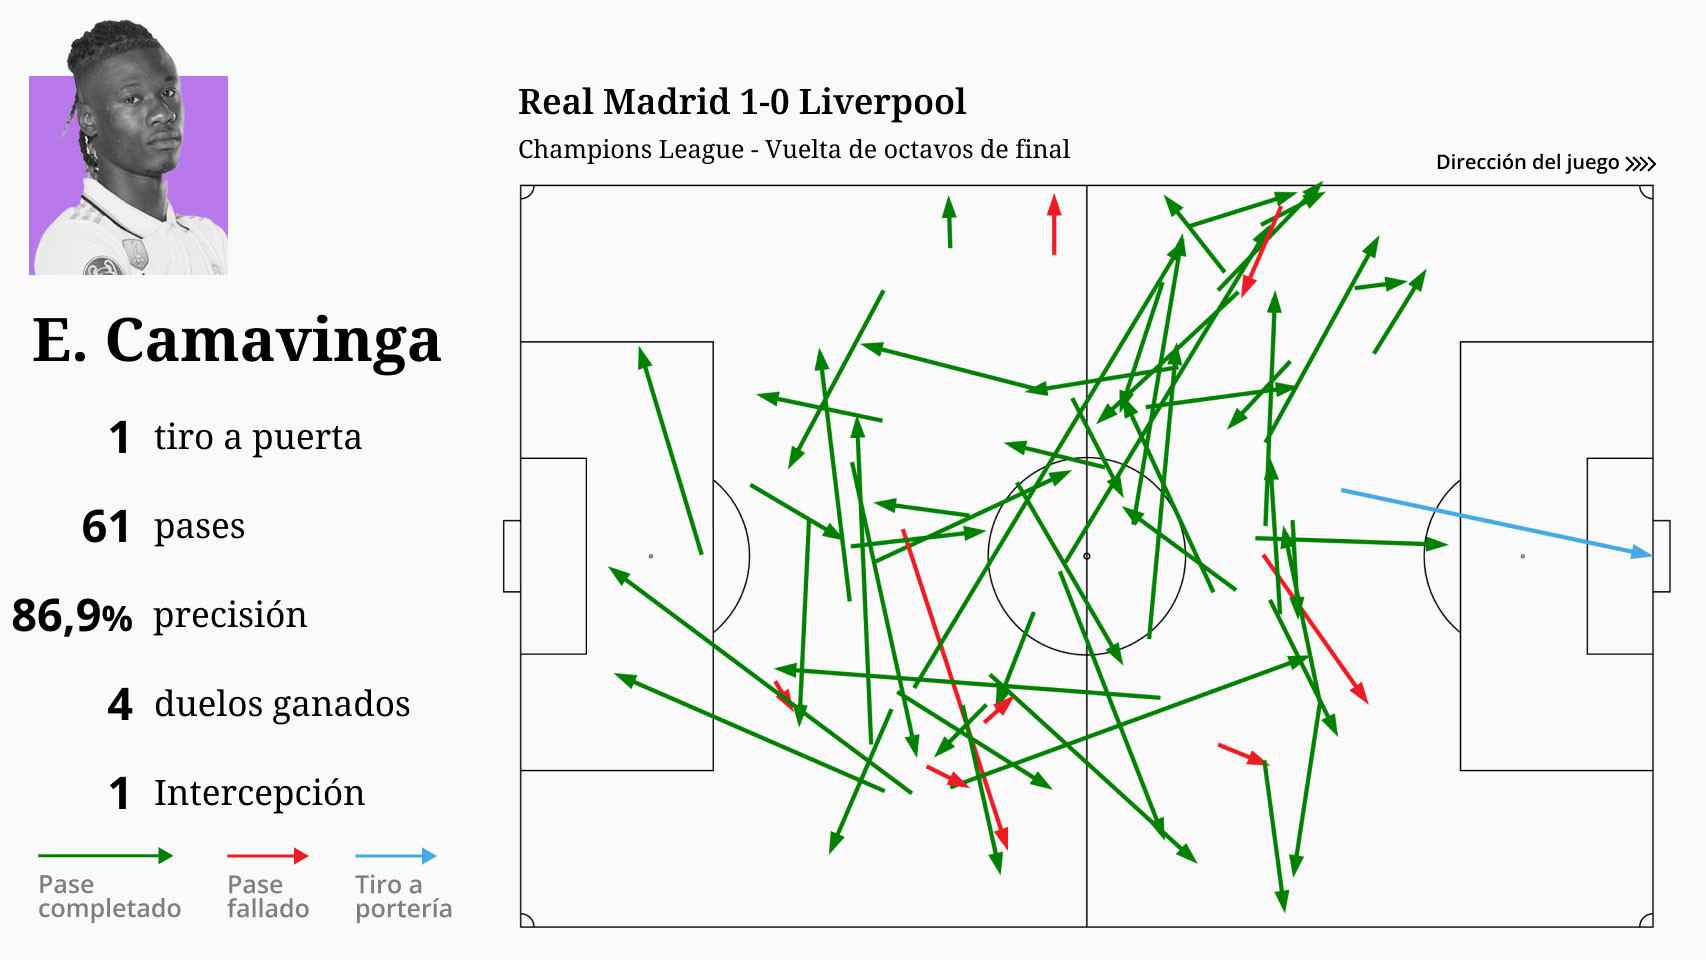 Las estadísticas de Camavinga en el Real Madrid 1-0 Liverpool